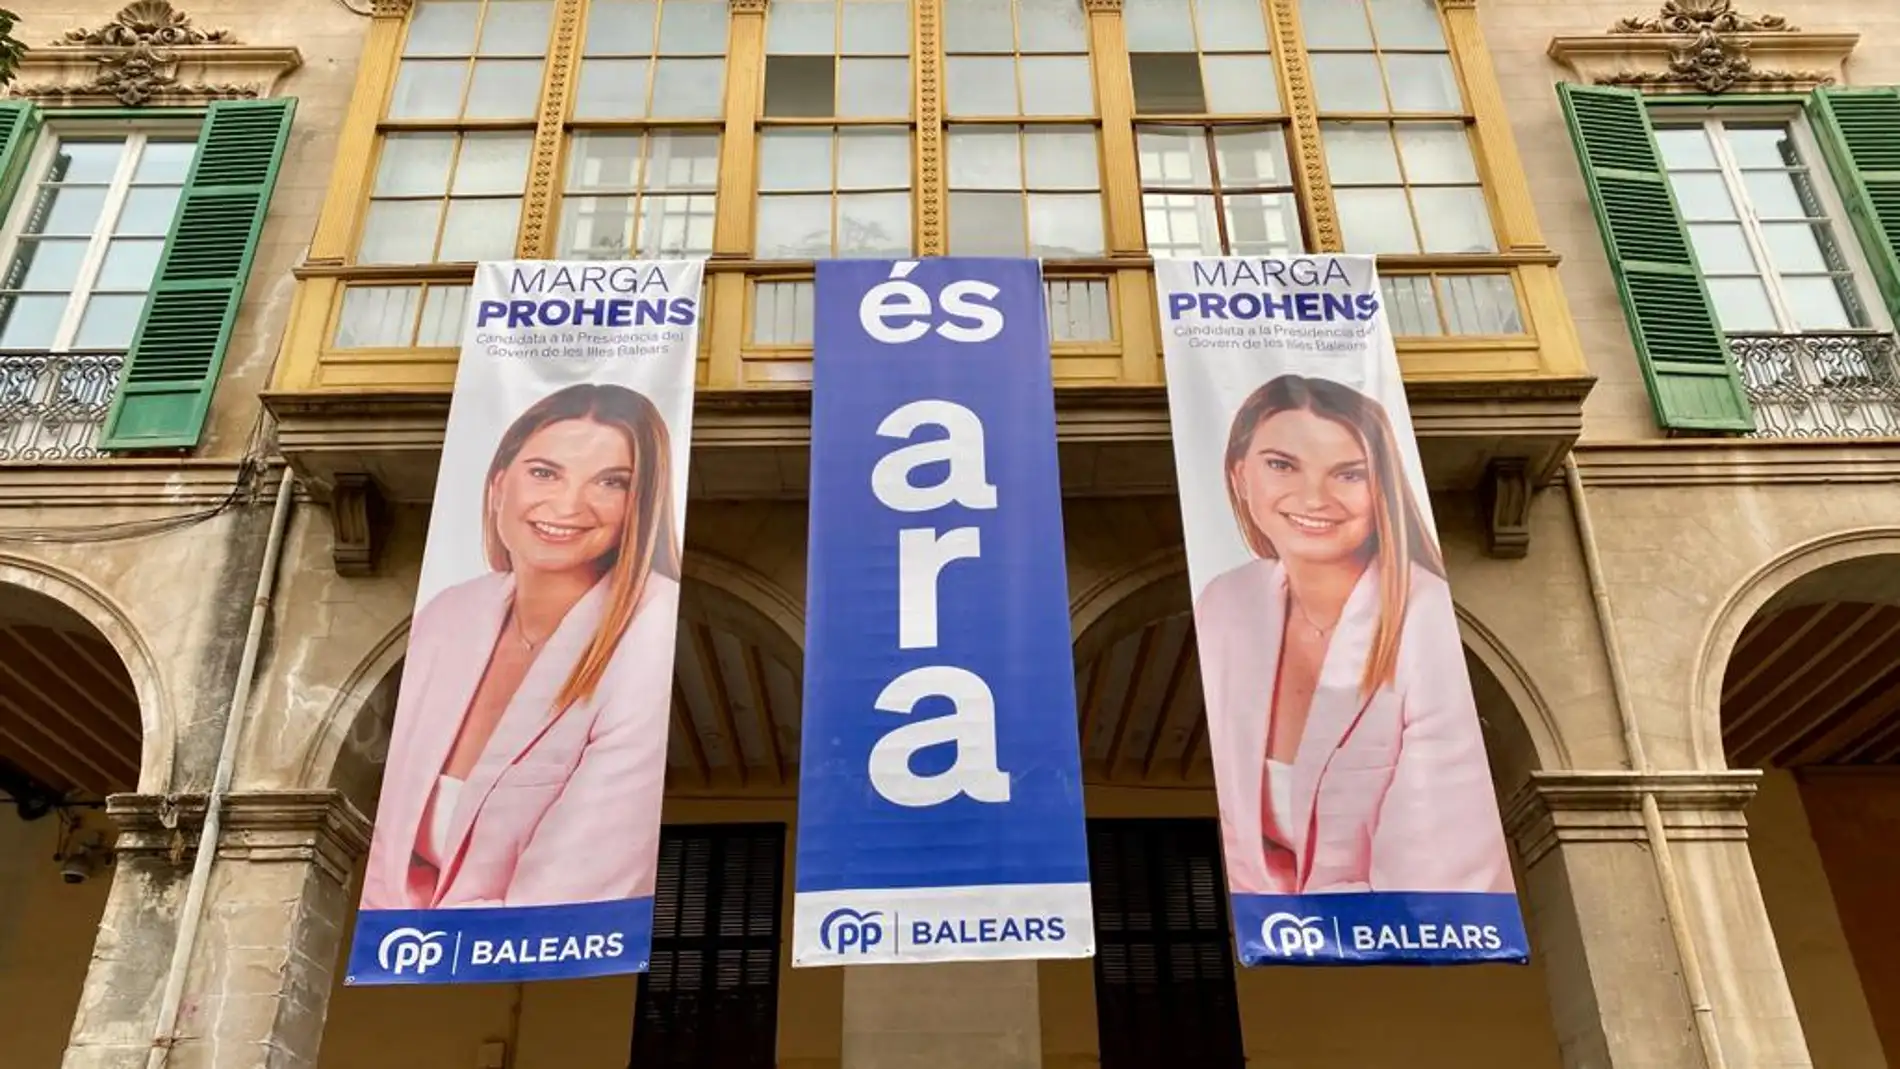 La sede del PP balear, en la calle Palau Reial de Palma, muestra una pancarta electoral con la imagen de la presidenta del PP regional y candidata a la presidencia del Govern, Marga Prohens.